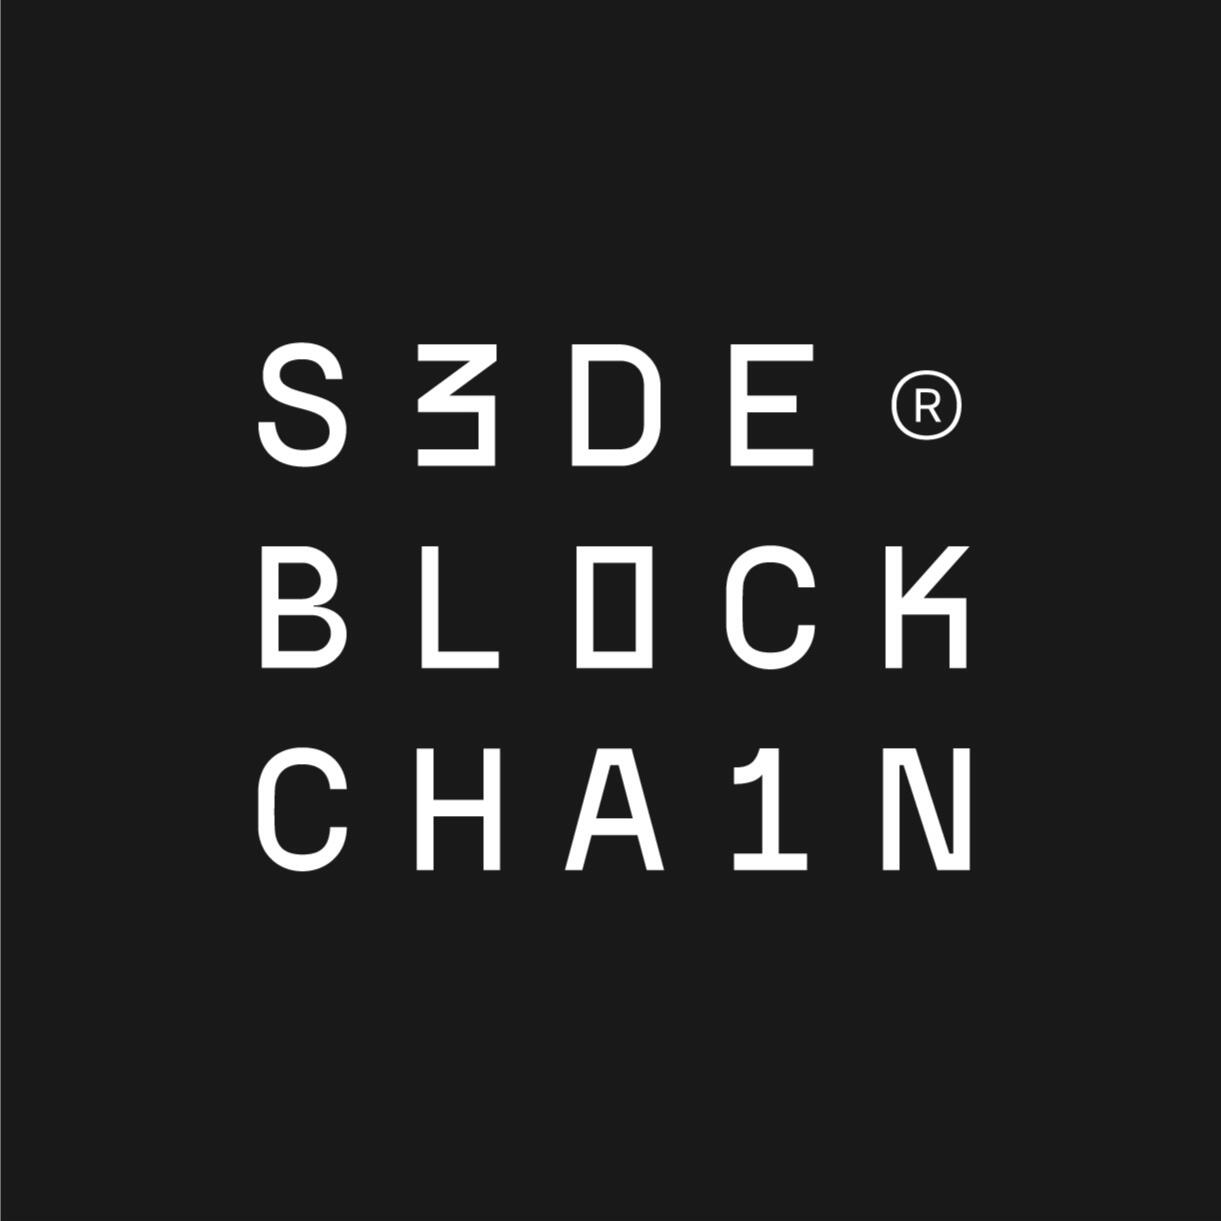 Logotipo oficial Sede Blockchain en blanco sobre fondo gris oscuro